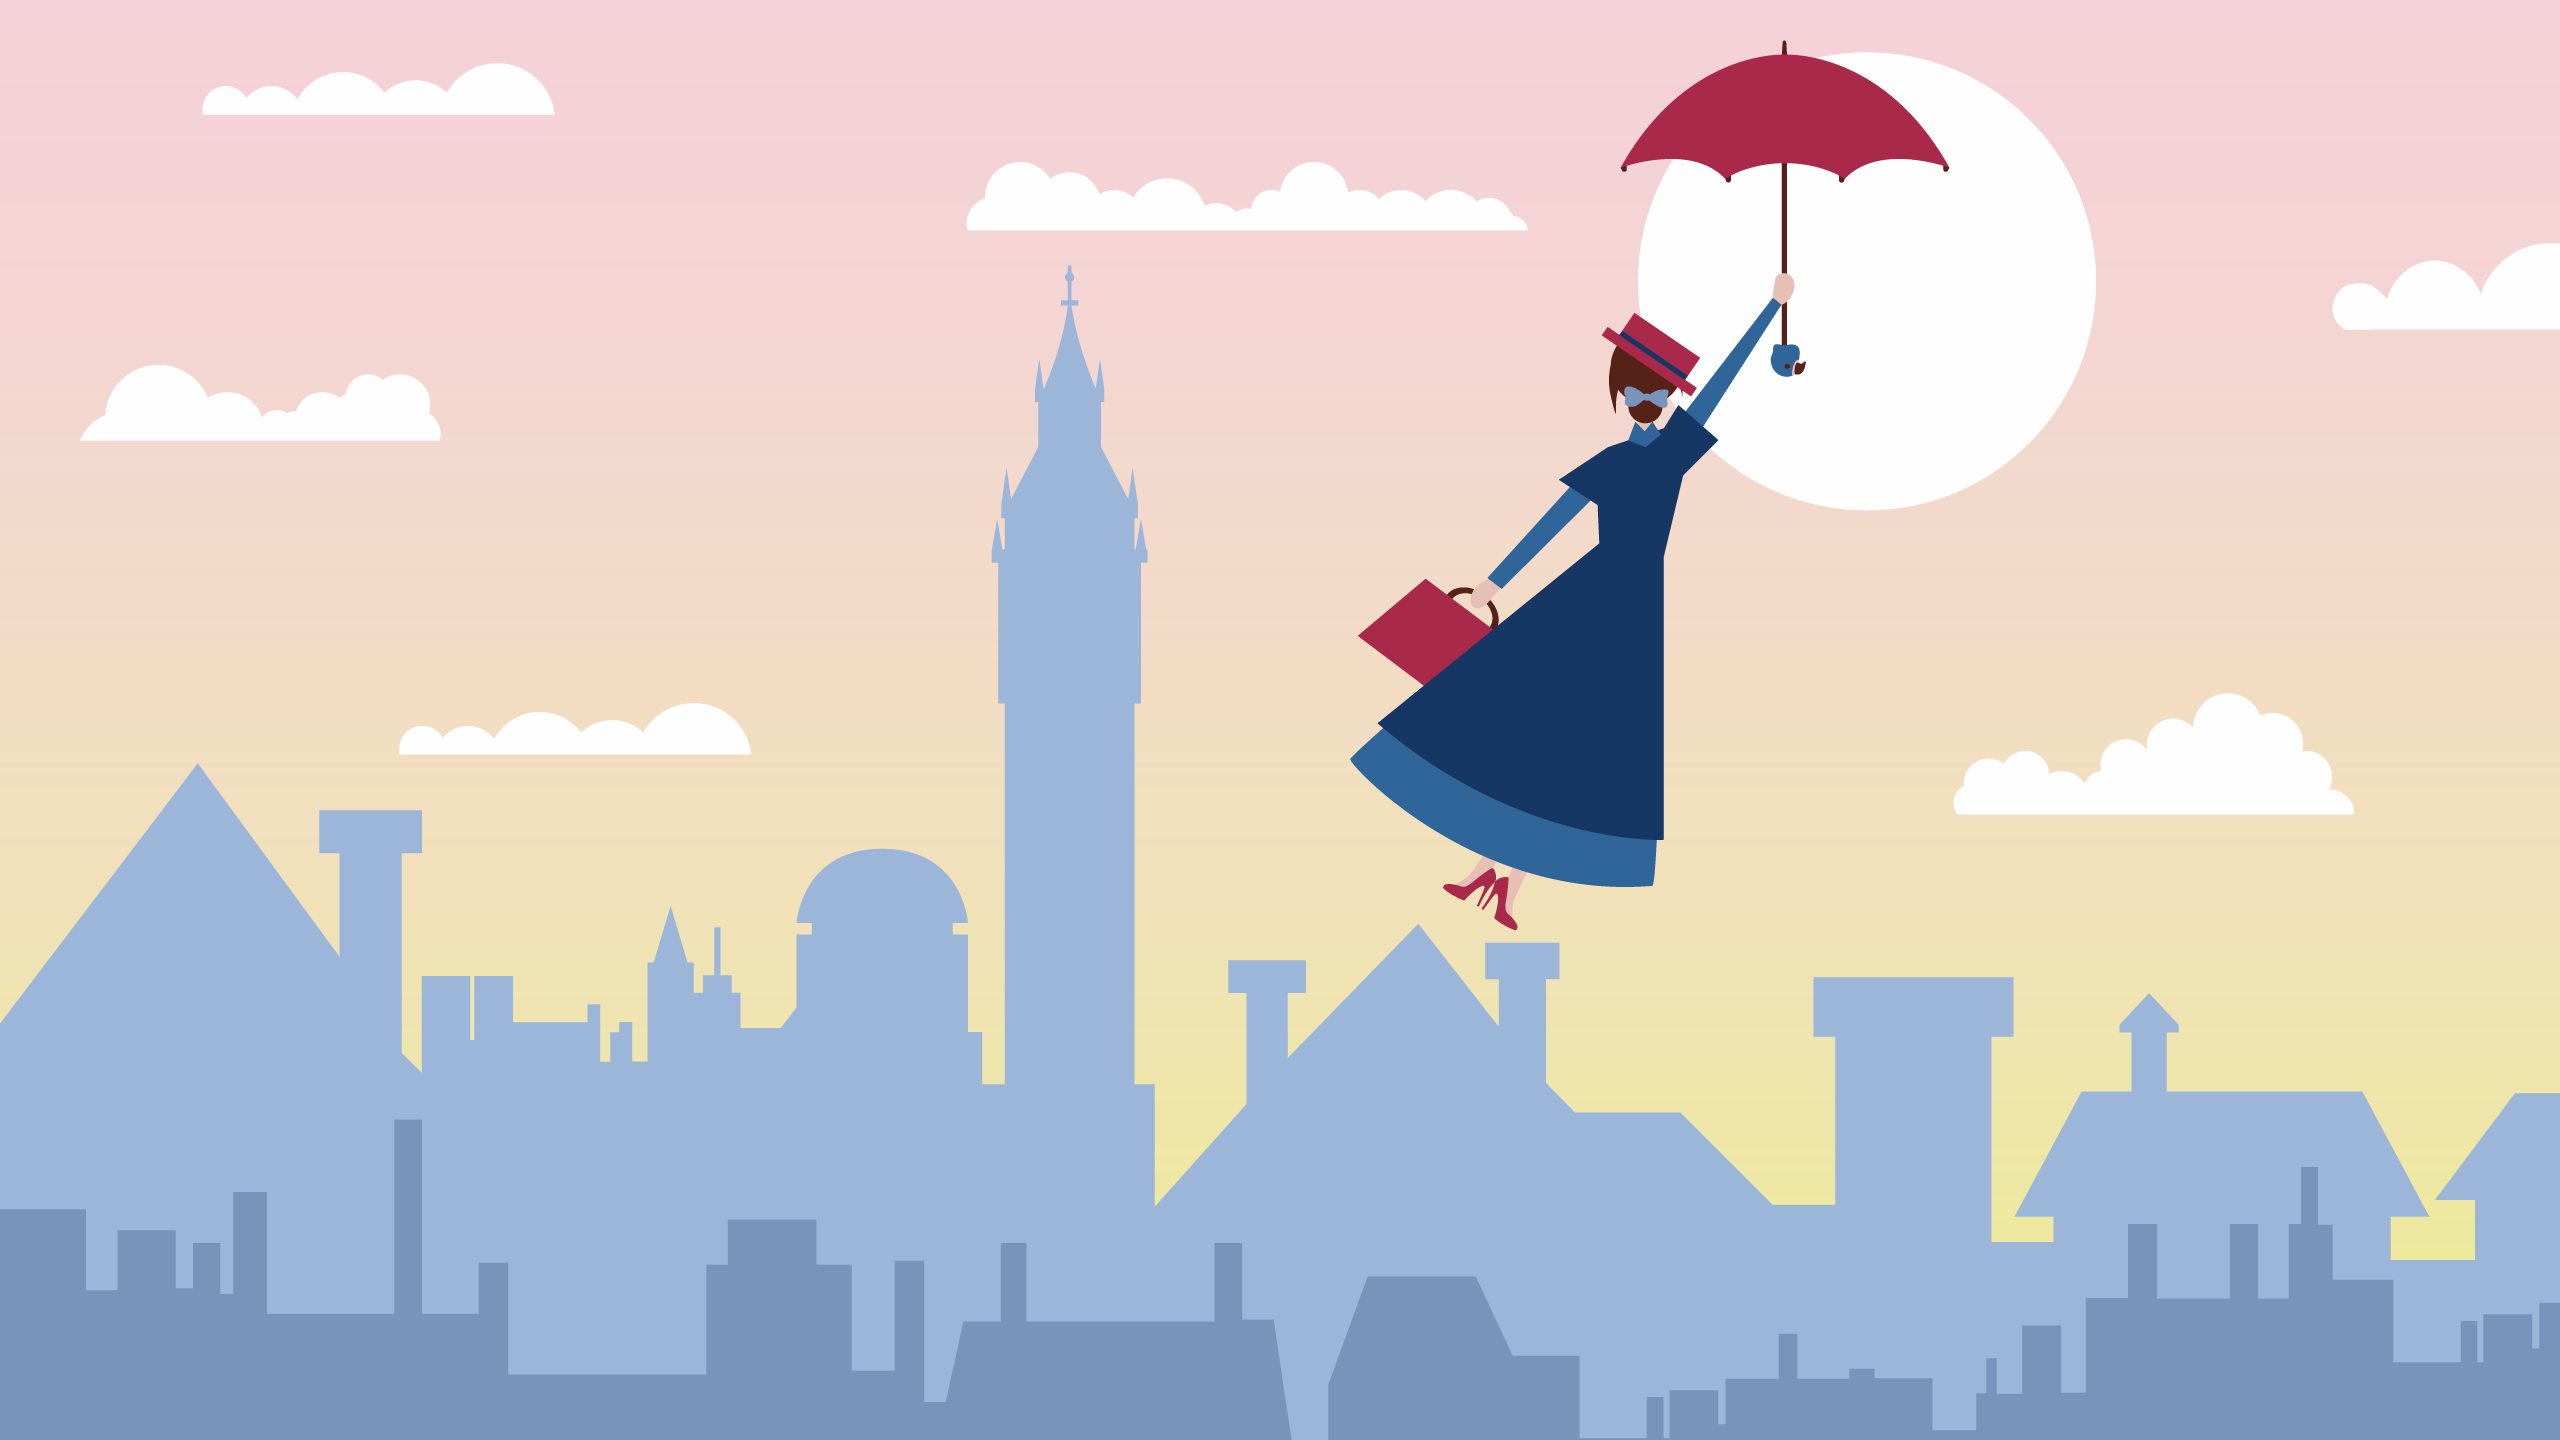 Mary Poppins Illustration